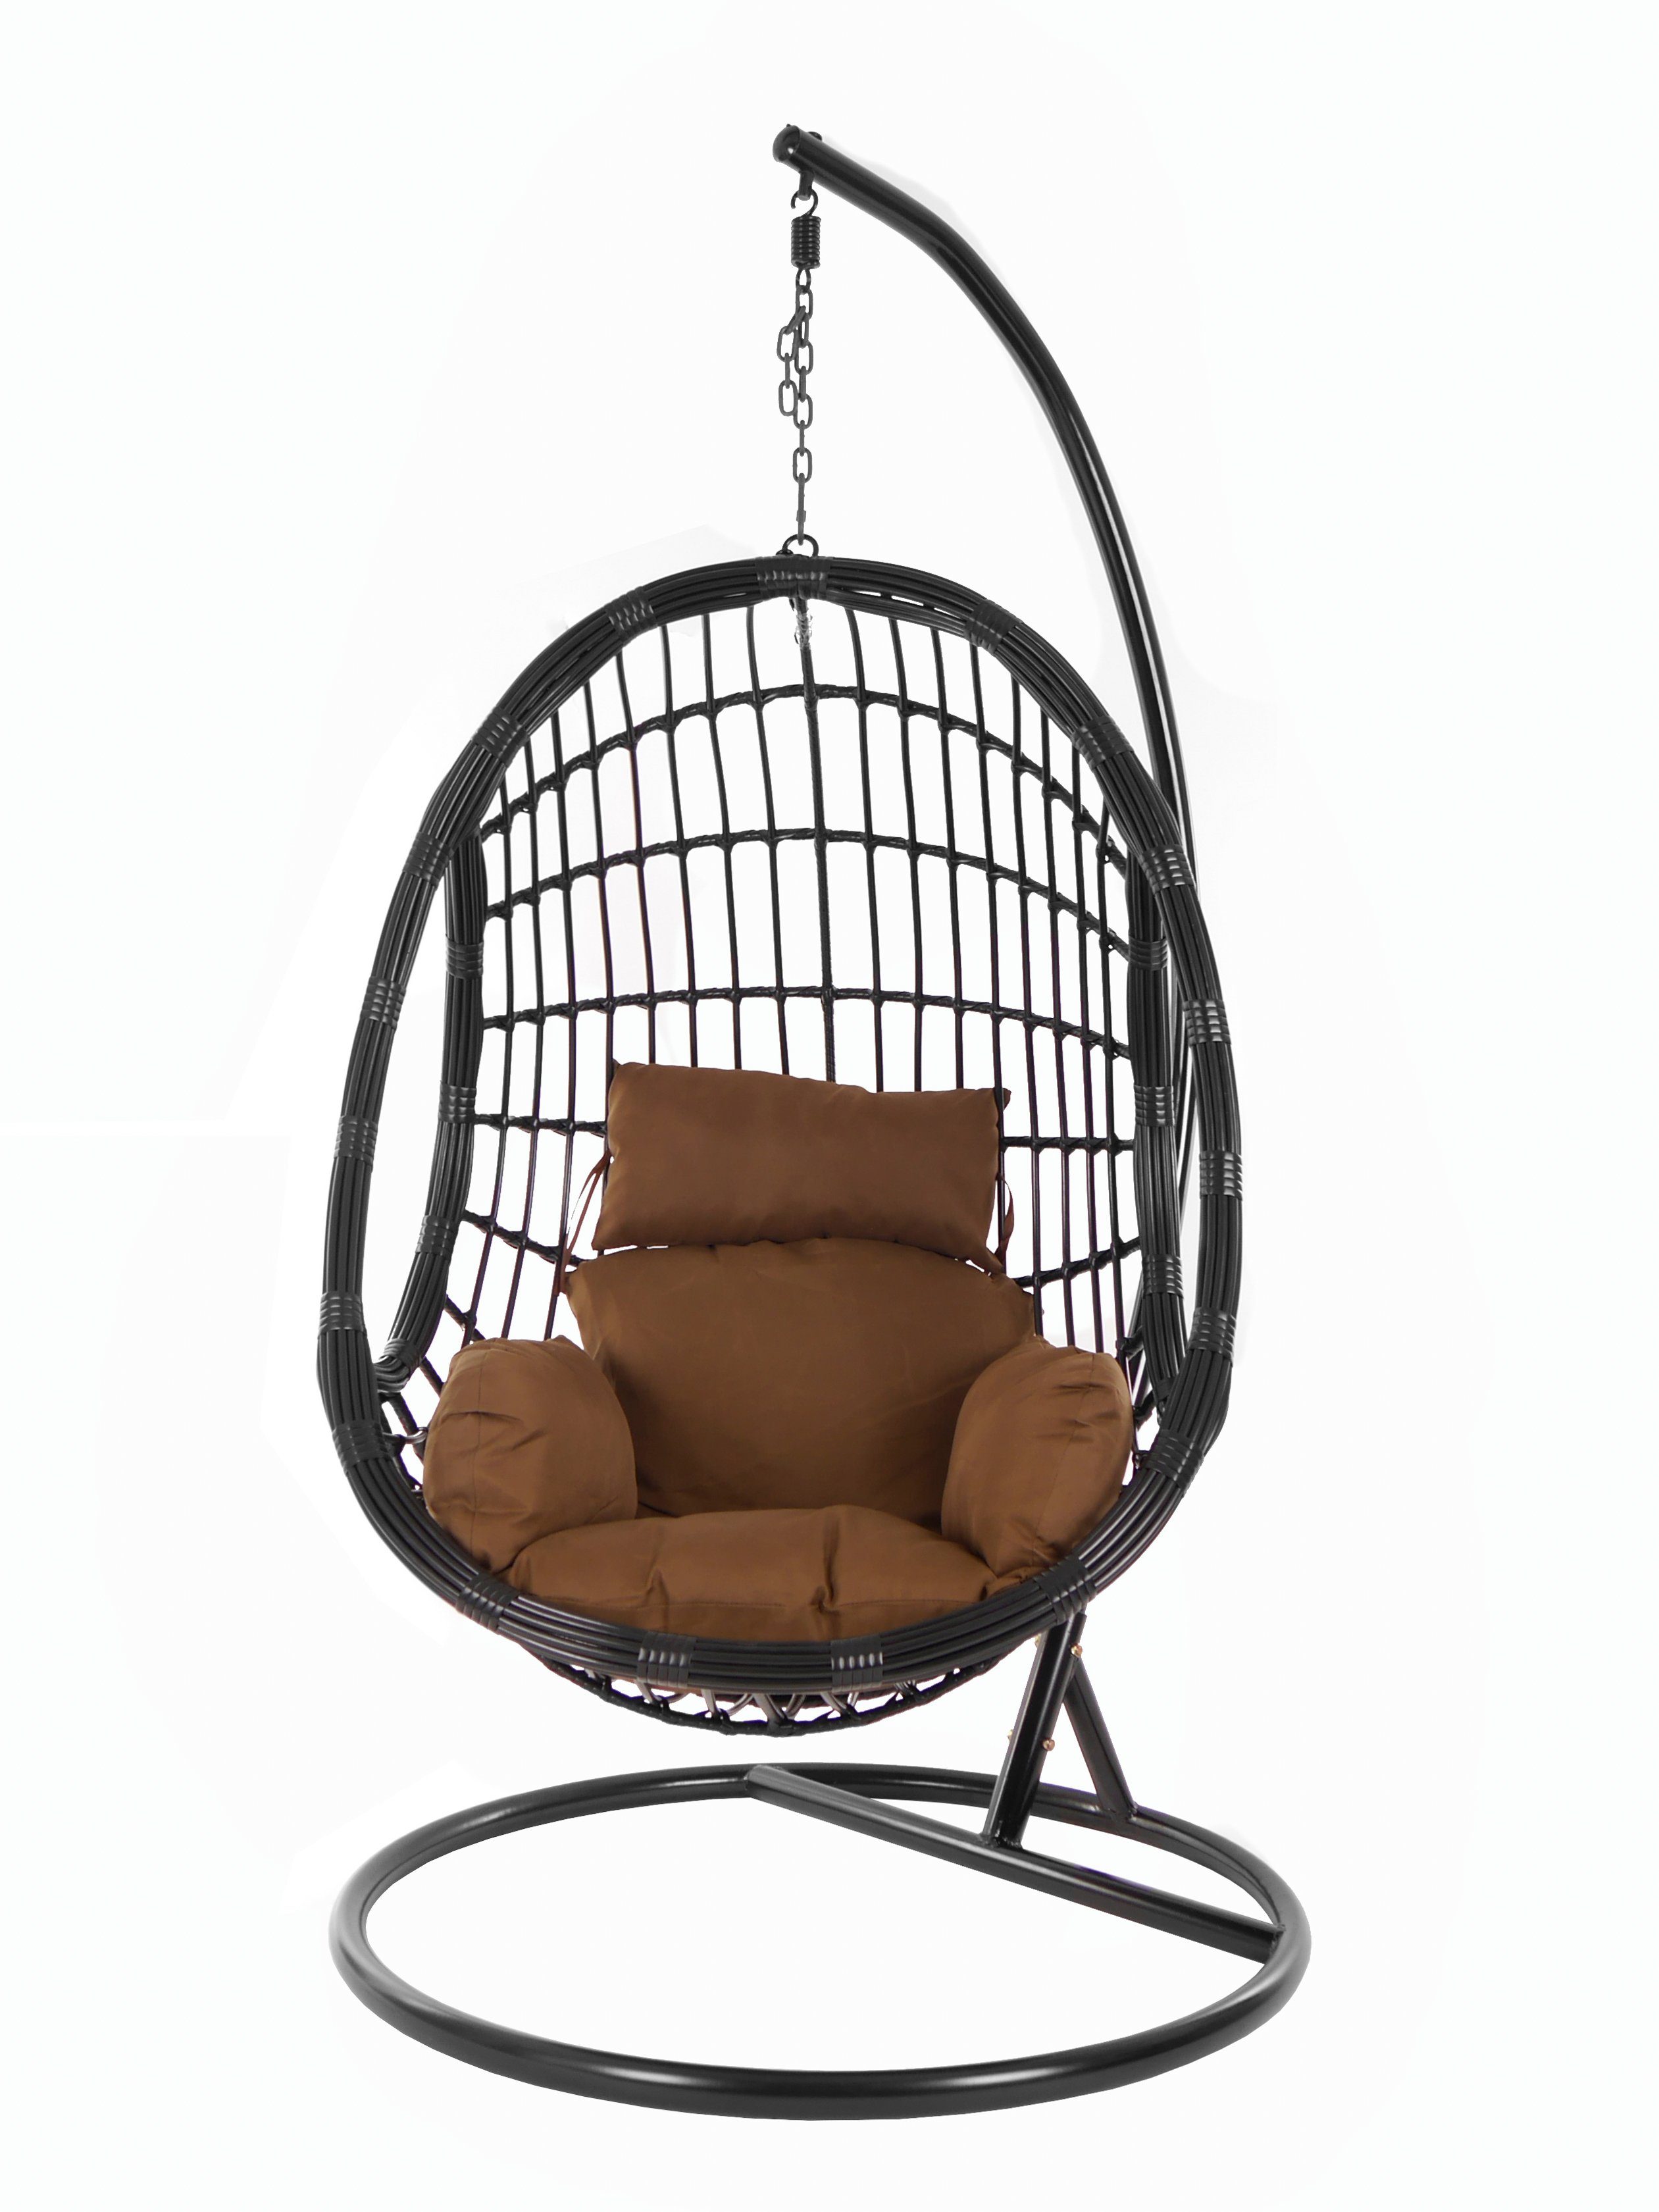 KIDEO Hängesessel PALMANOVA black, Schwebesessel, und Kissen, dunkelbraun chocolate) Hängesessel Gestell Chair, Nest-Kissen (7790 mit Swing